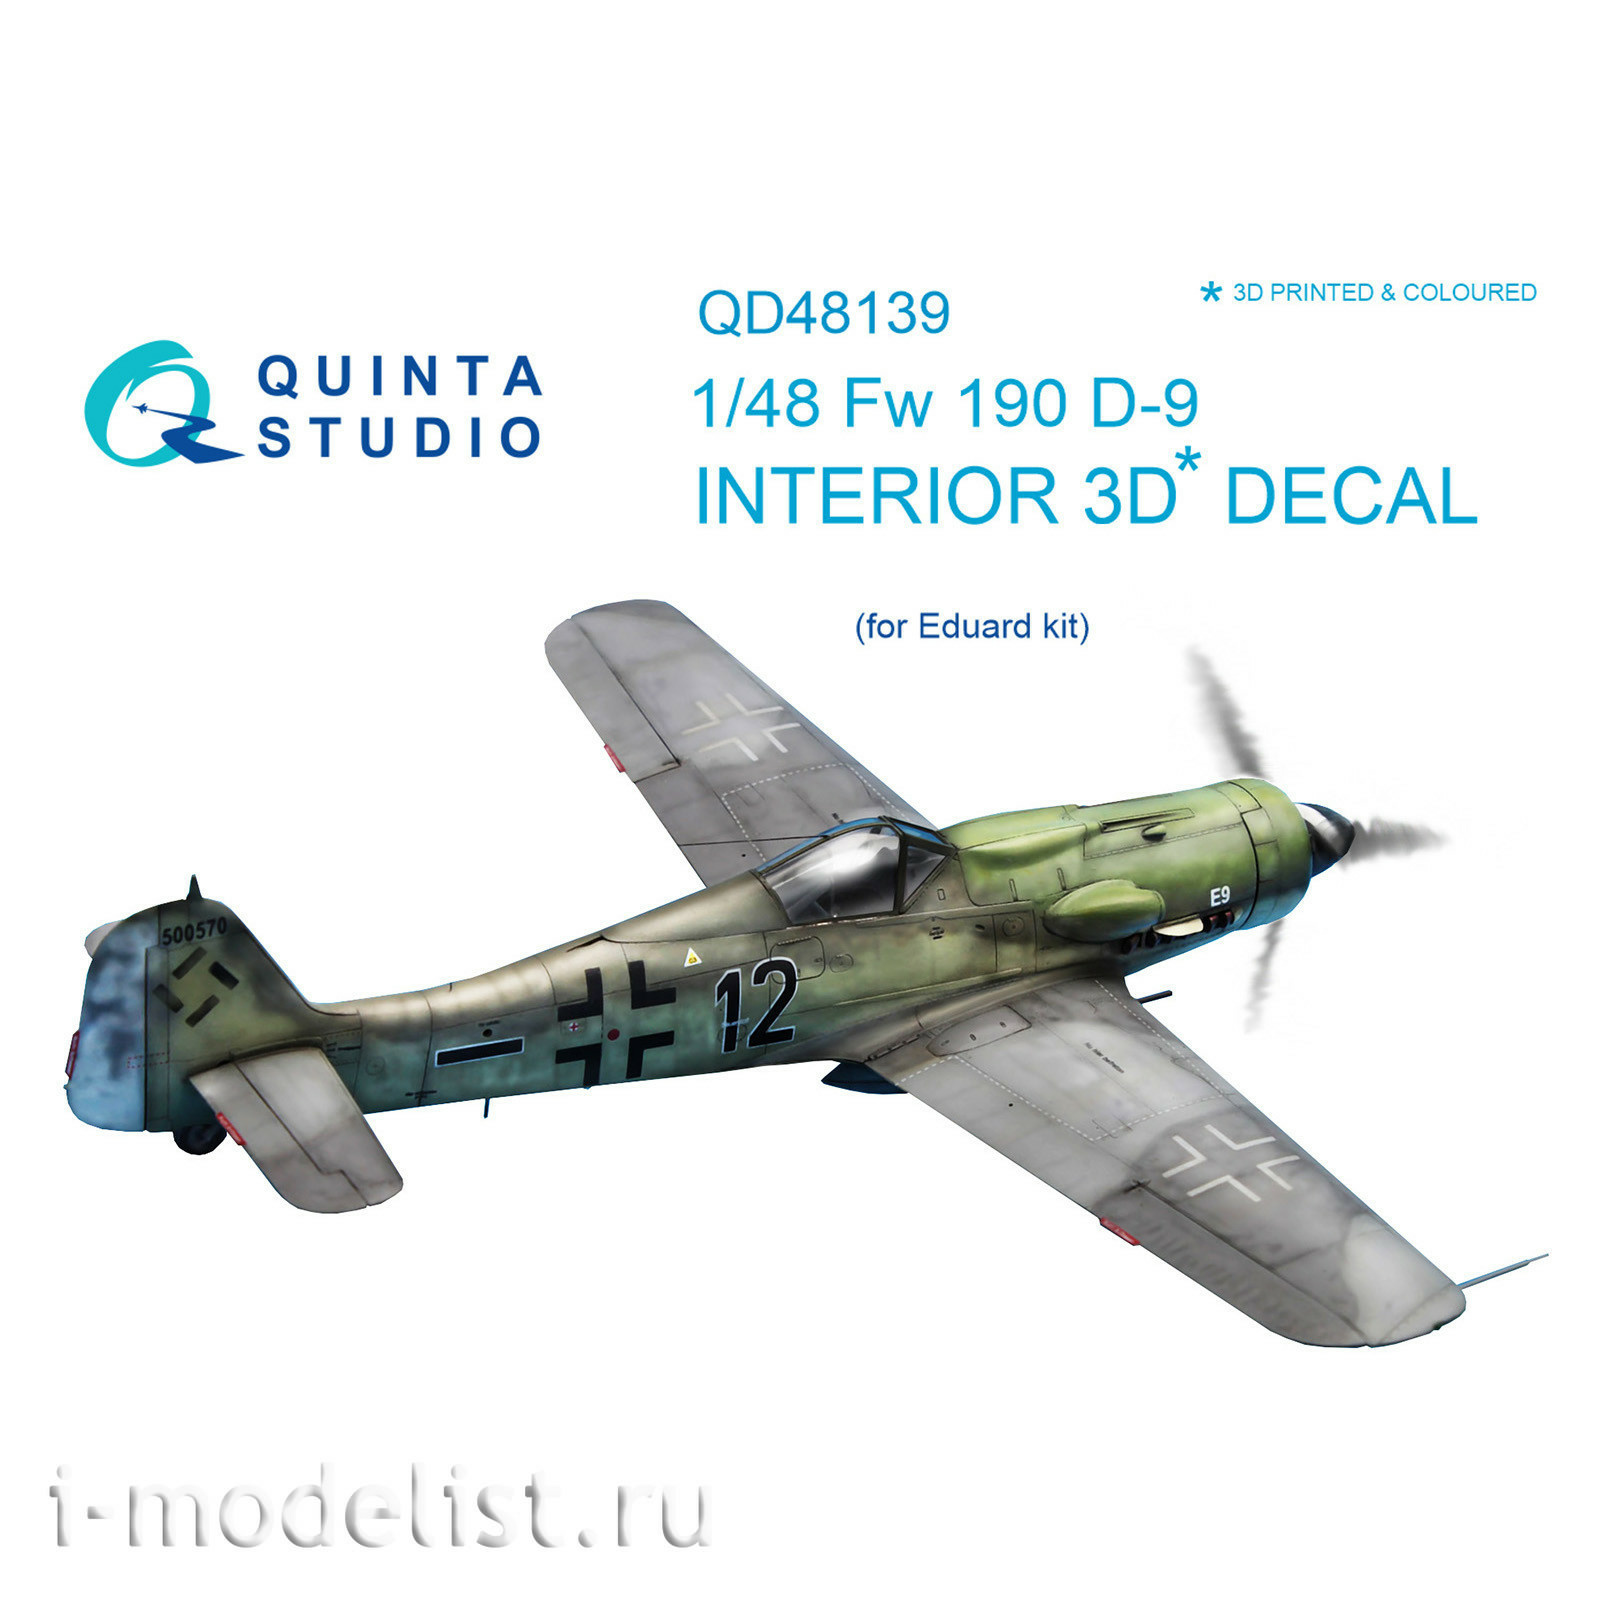 QD48139 Quinta Studio 1/48 3D Cabin Interior Decal FW 190D-9 (for Eduard model)